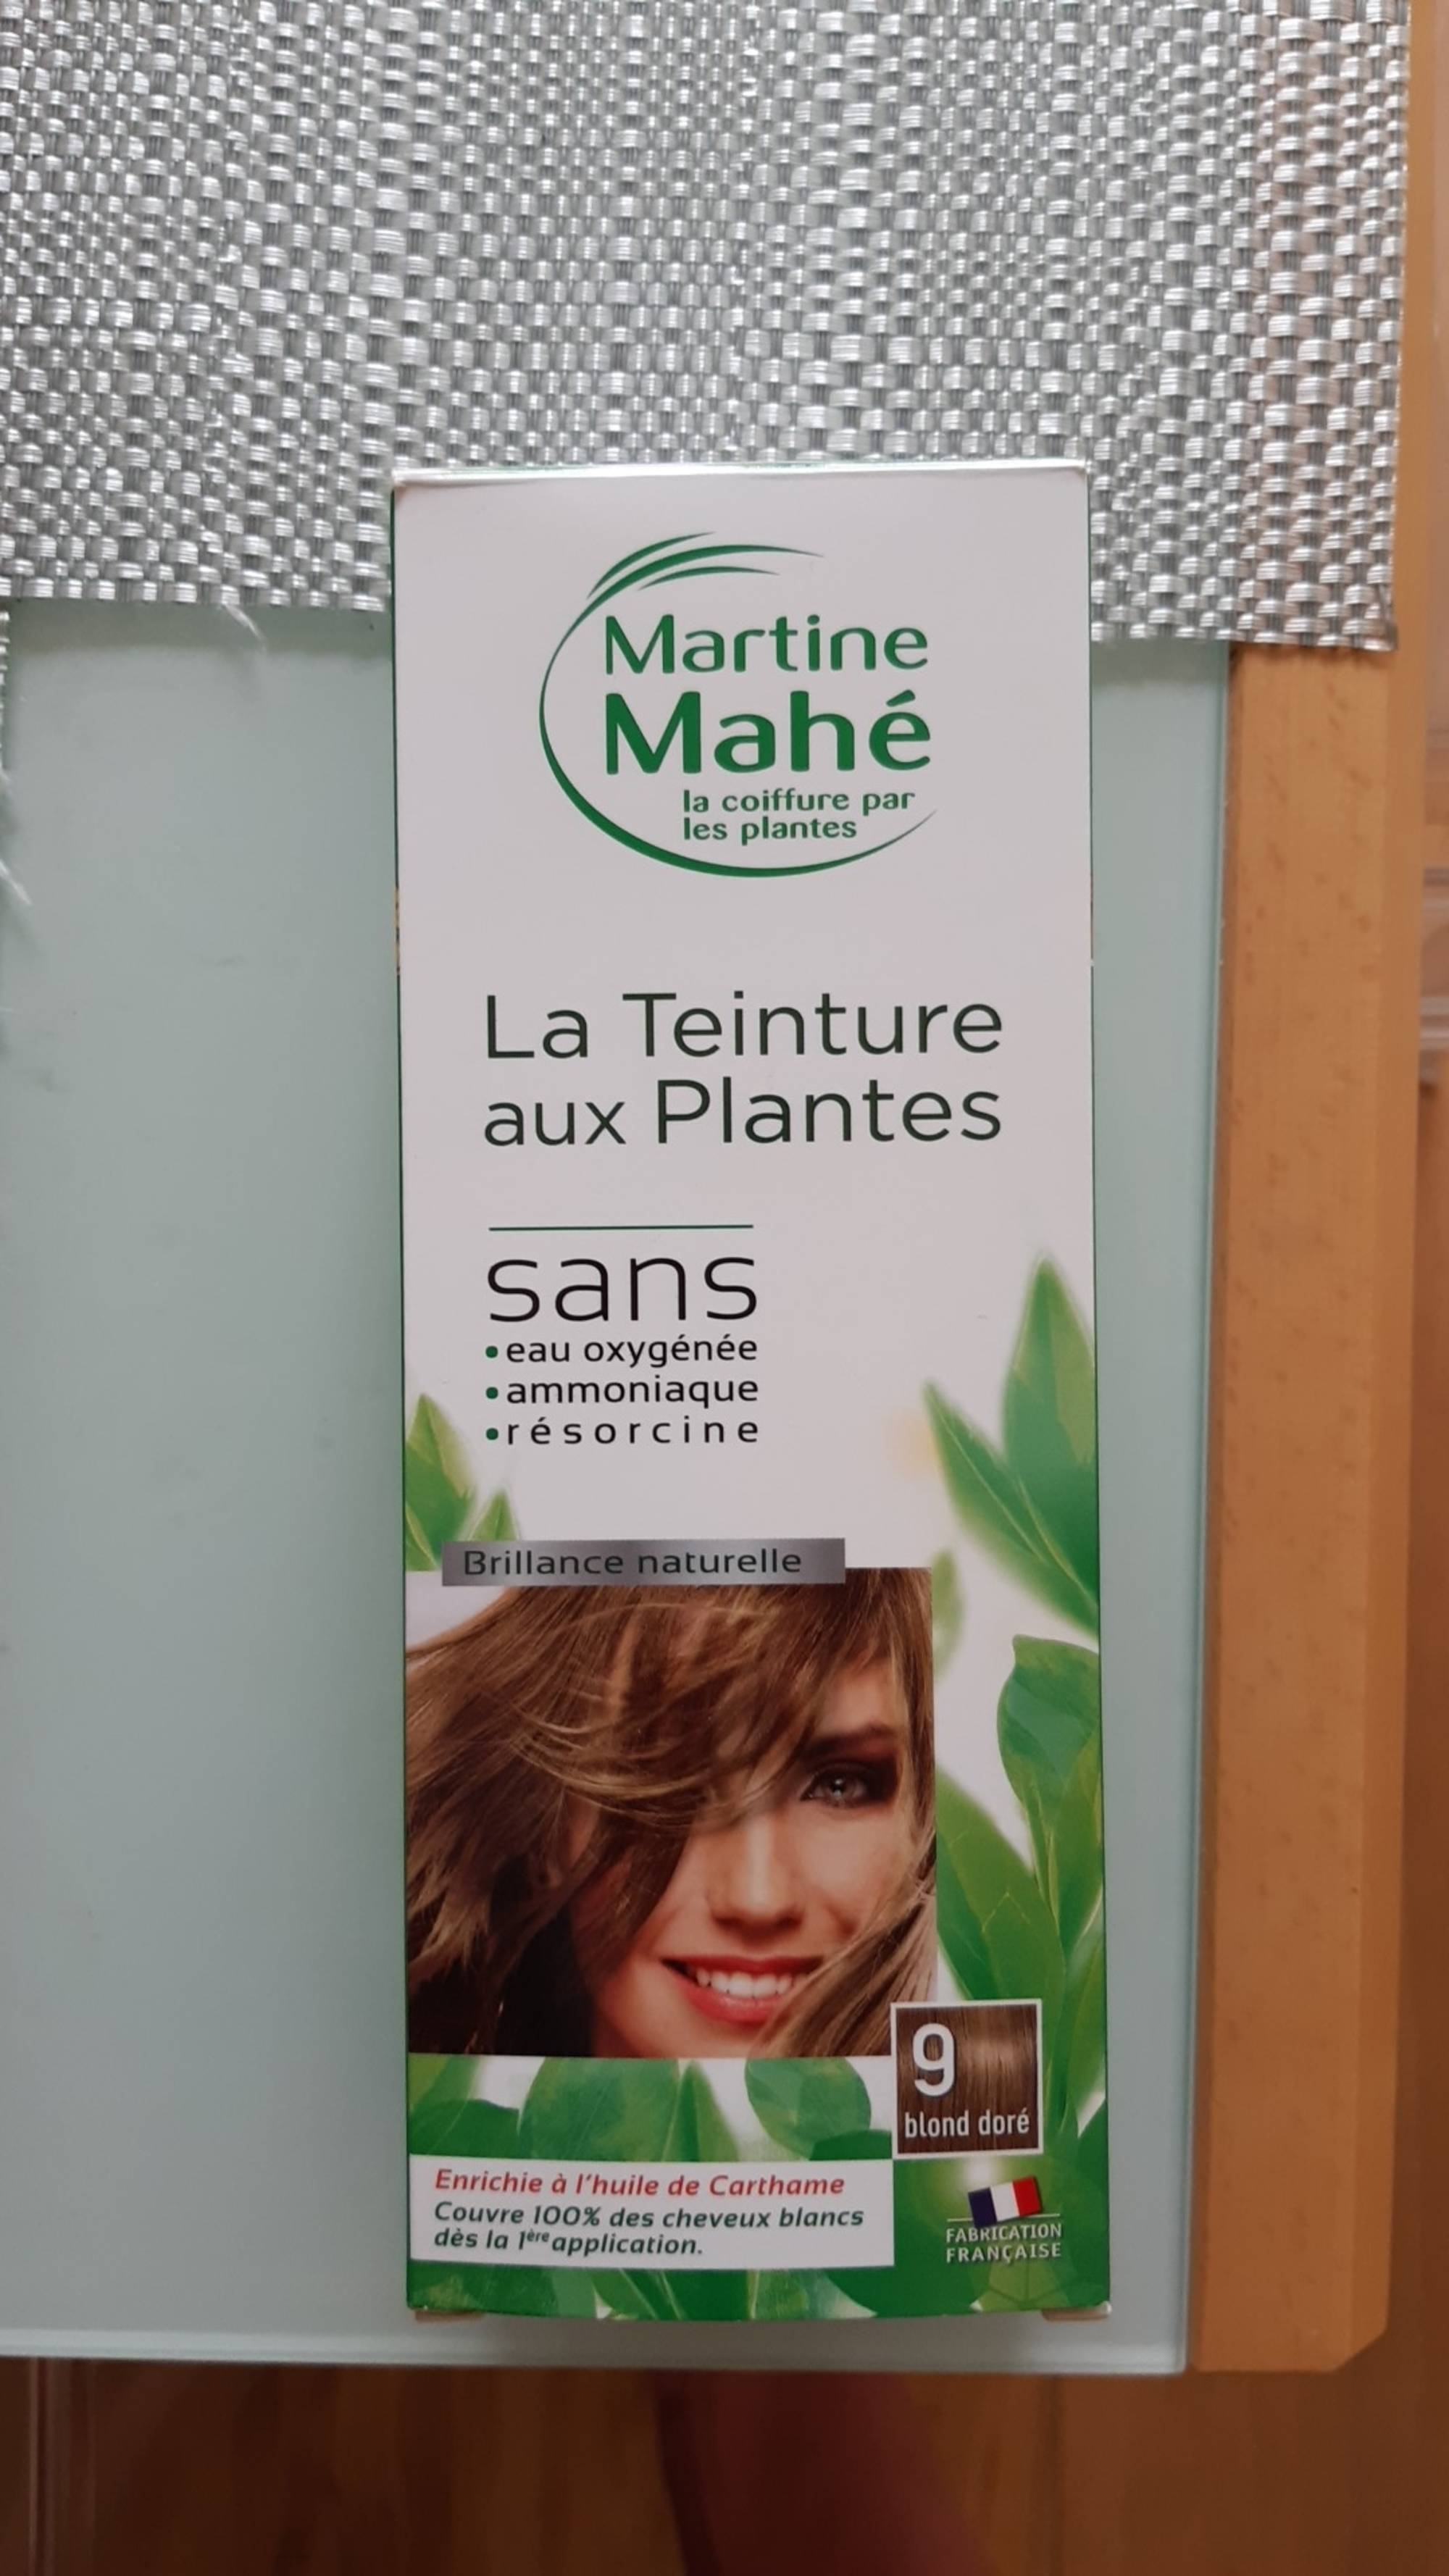 MARTINE MAHÉ - La Teinture aux plantes 9 blond doré